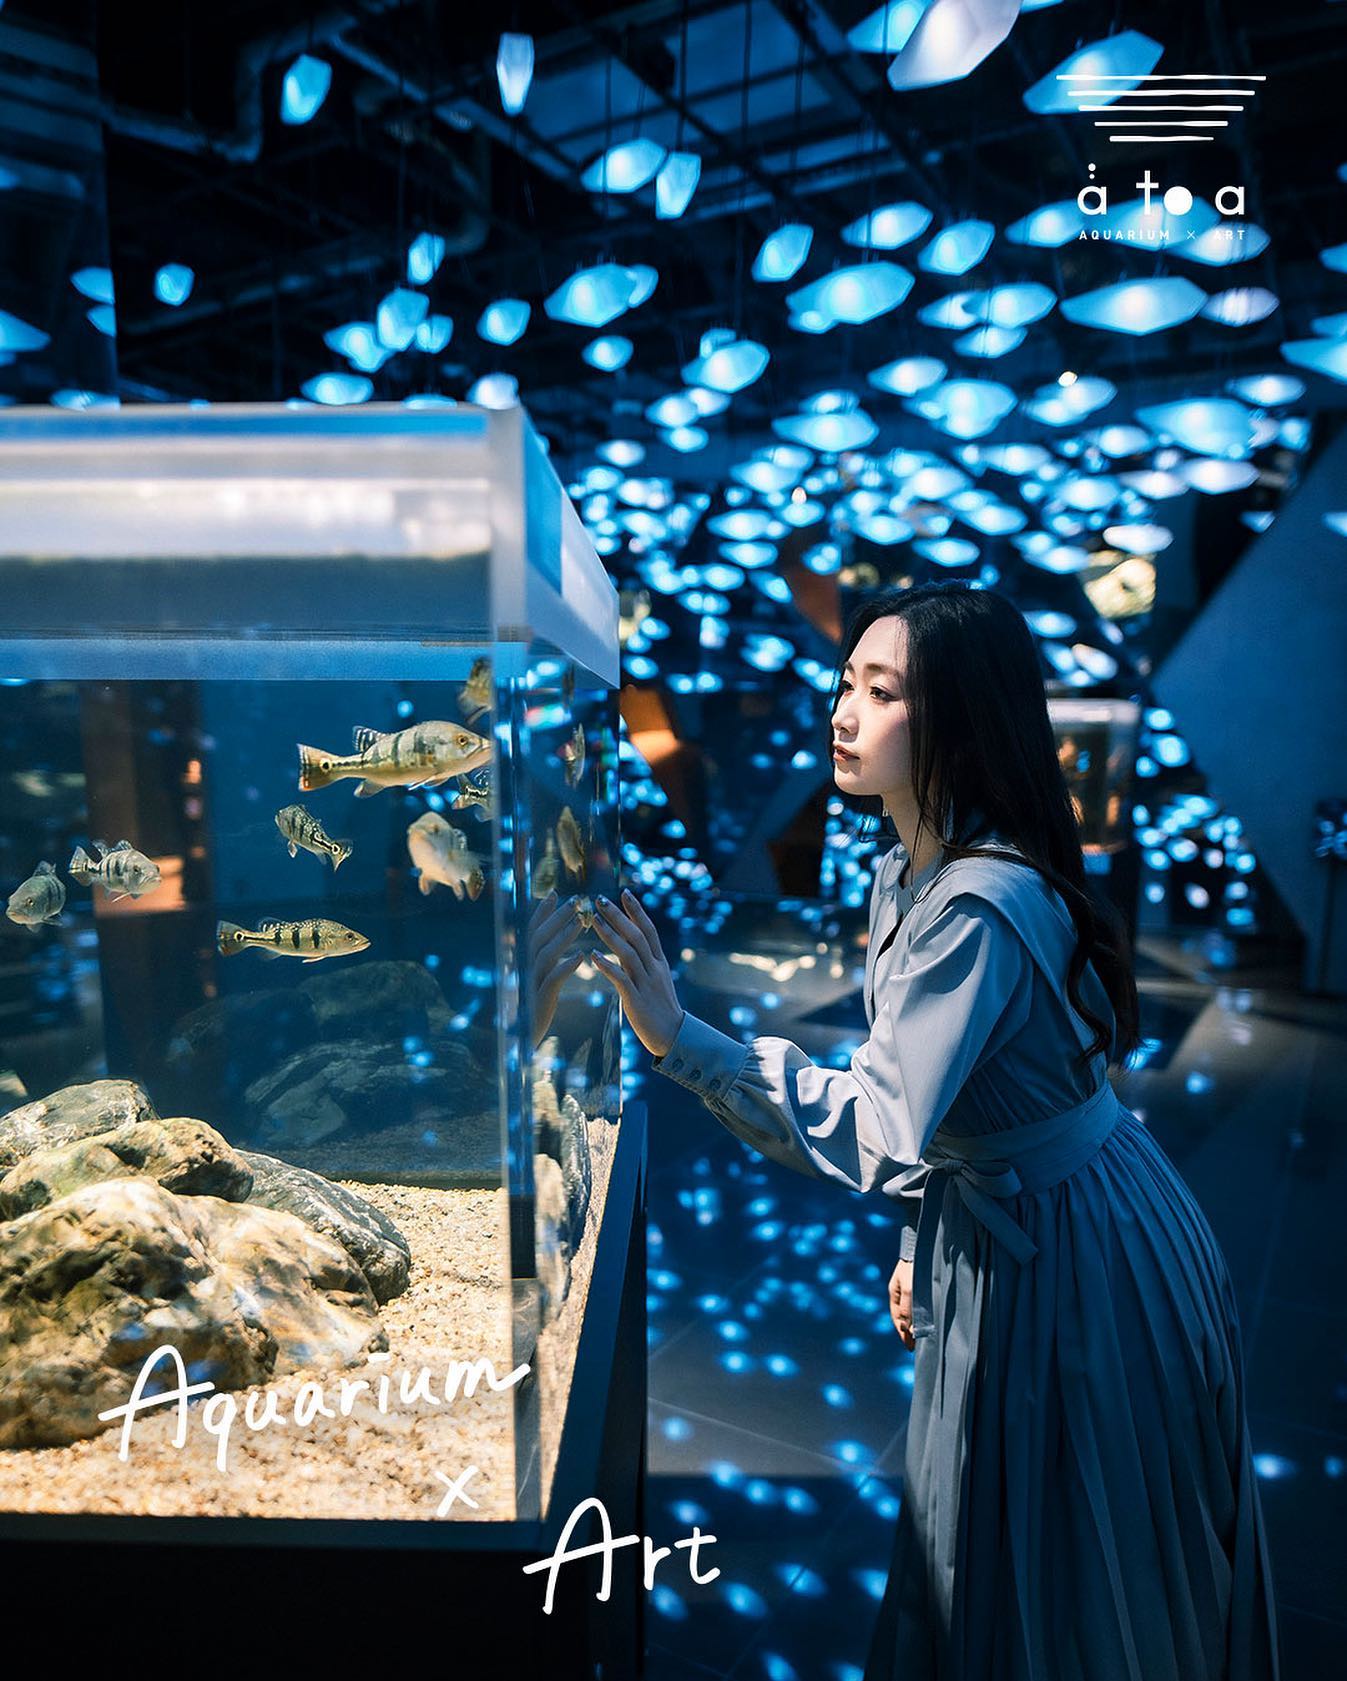 japan - atoa aquarium